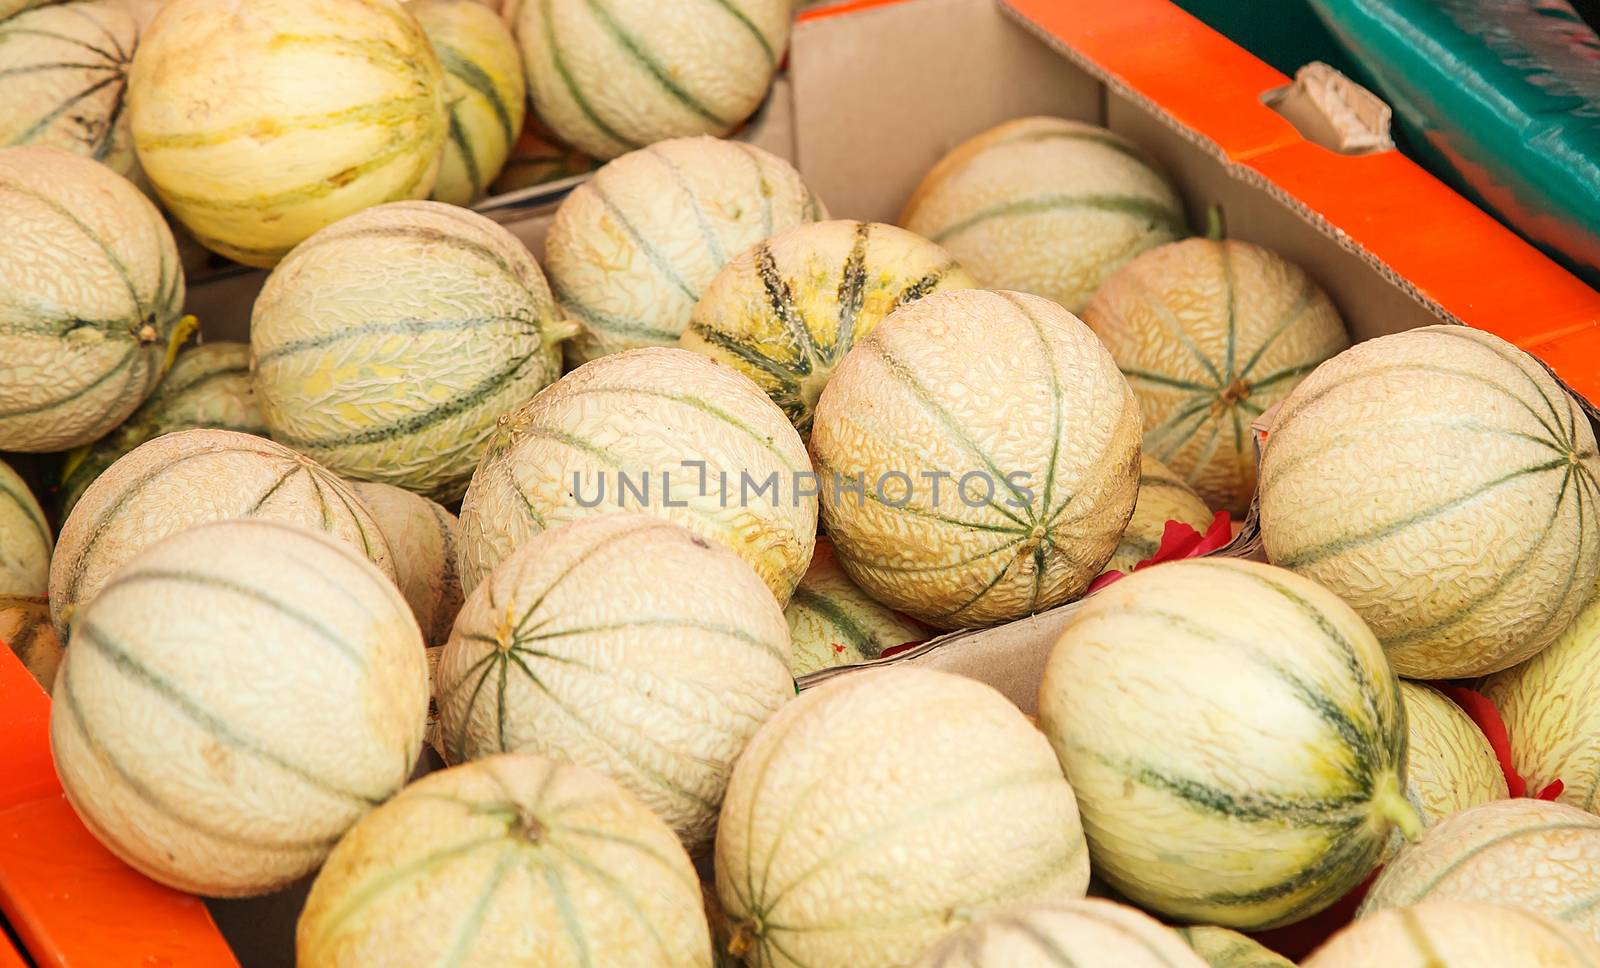 Charentais melons at farmer's market by pixinoo